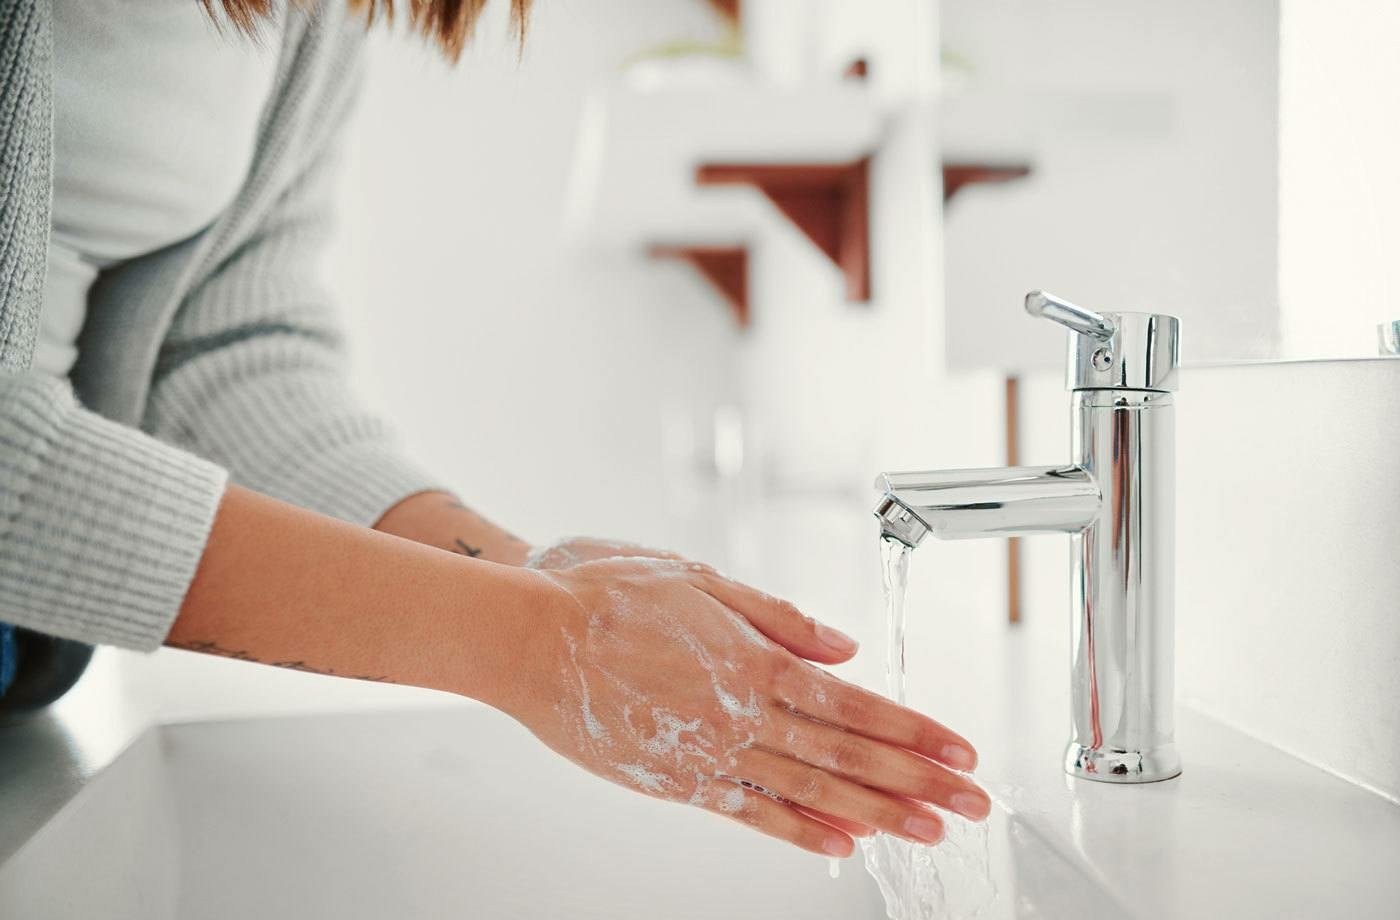 Vor allem wenn ein kleines Baby im Haus ist, muss man höufig die Hände waschen